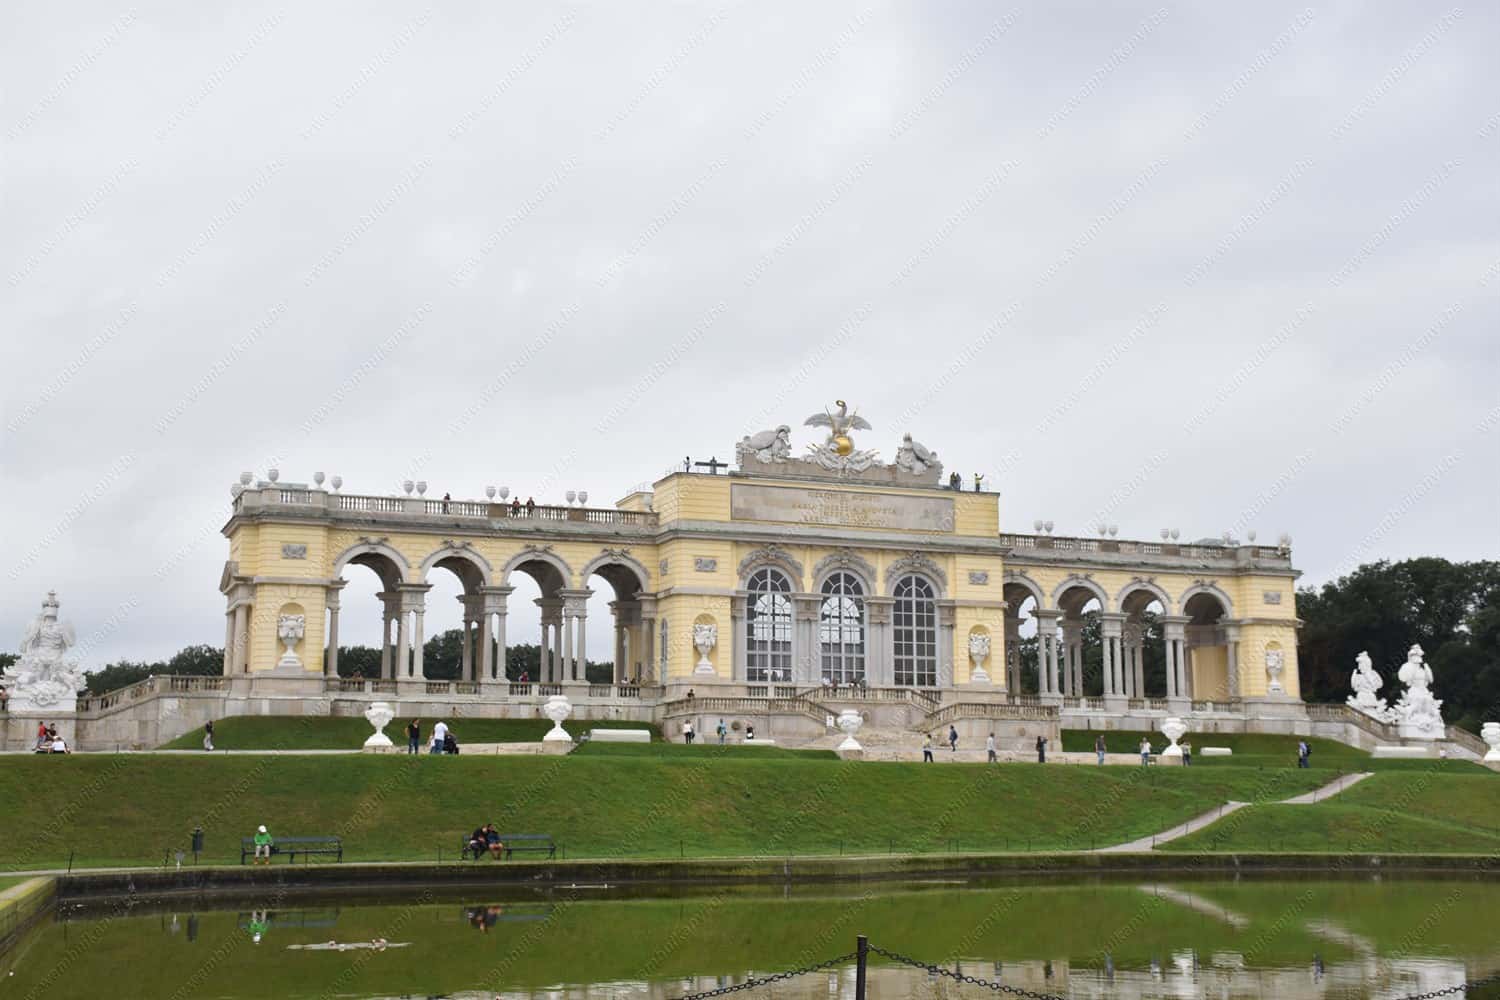 The Gardens of the Schönbrunn Palace, Vienna Austria